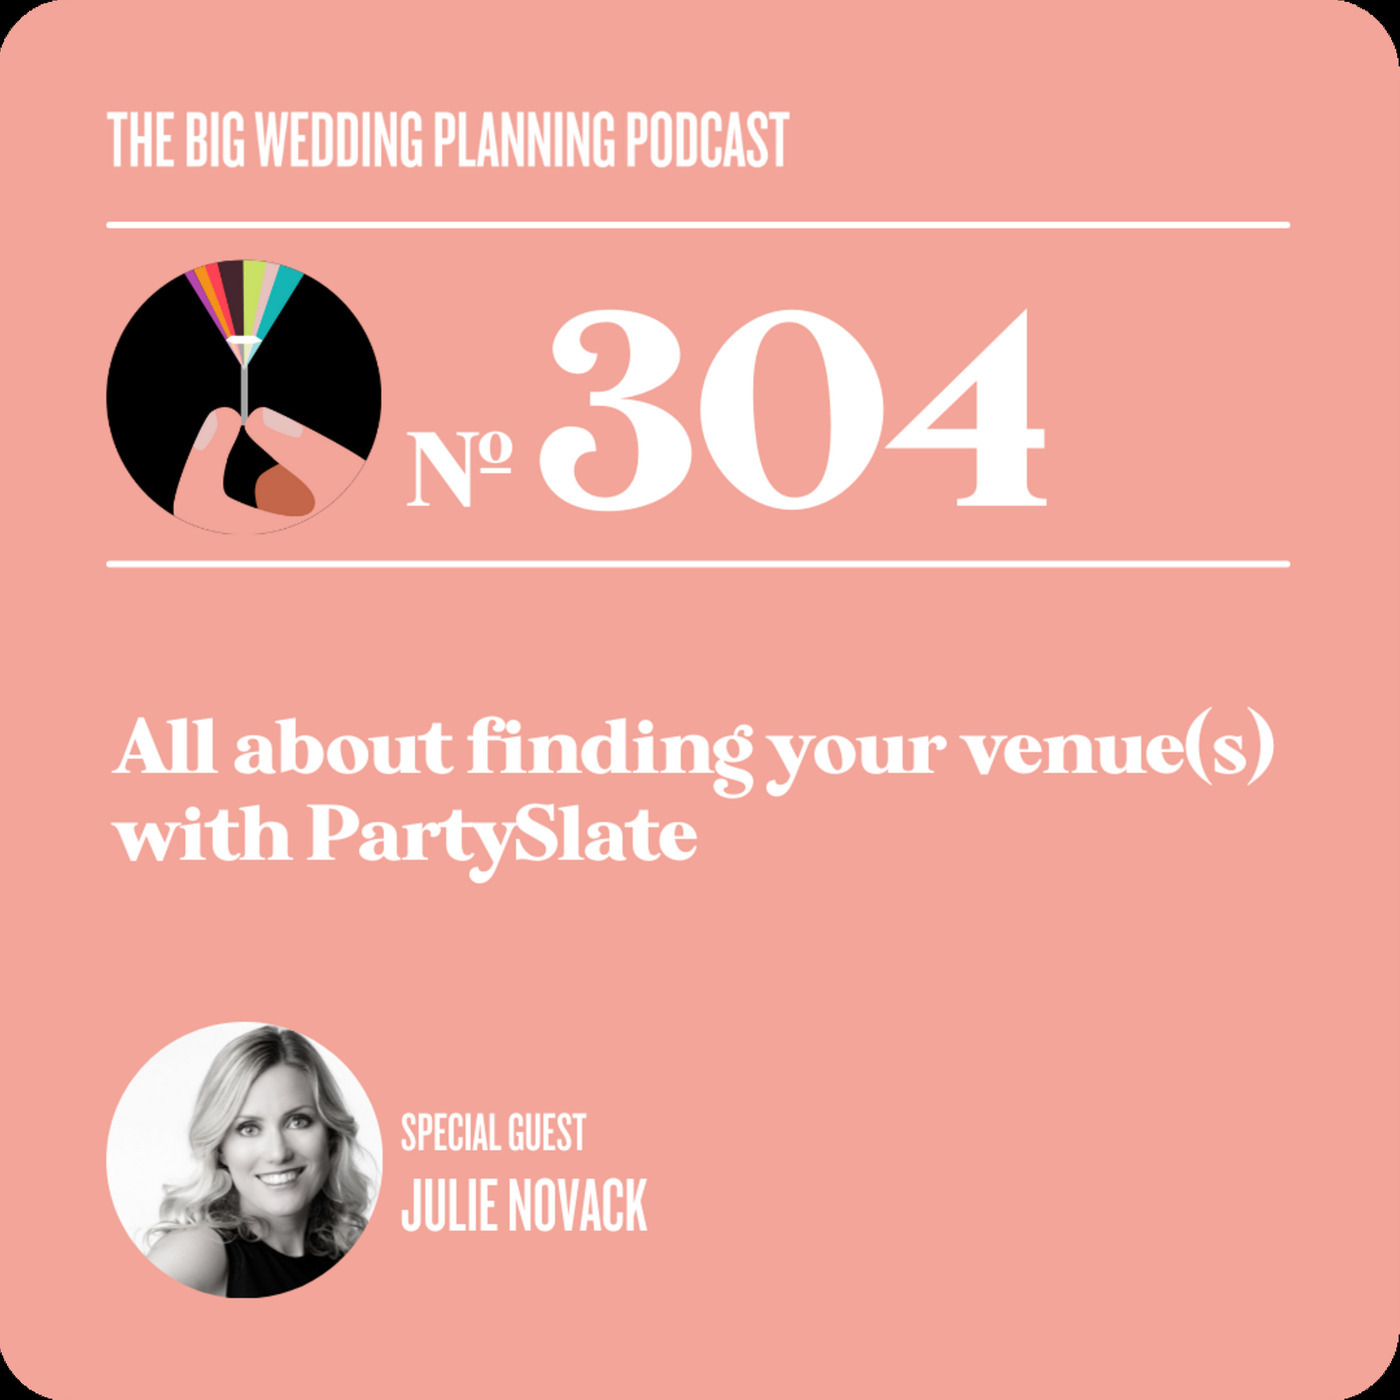 PartySlate Founder Julie Novack Joins The Big Wedding Planning Podcast